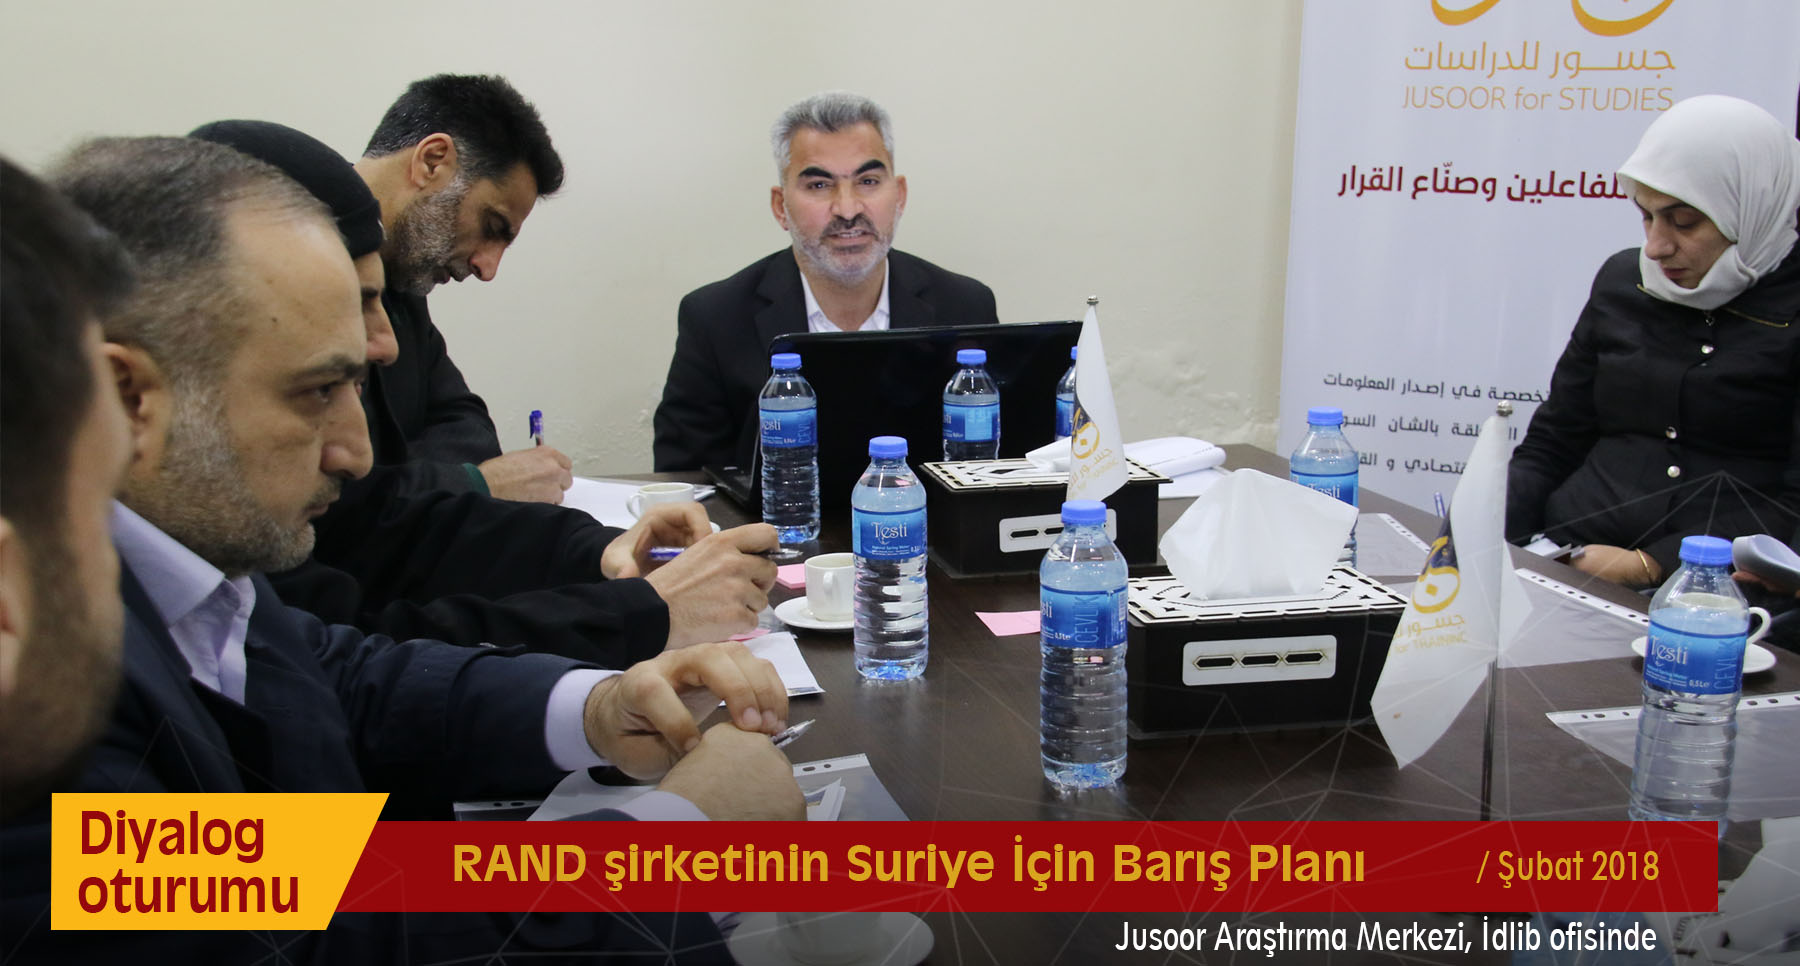 RAND şirketinin “Suriye İçin Barış Planı”